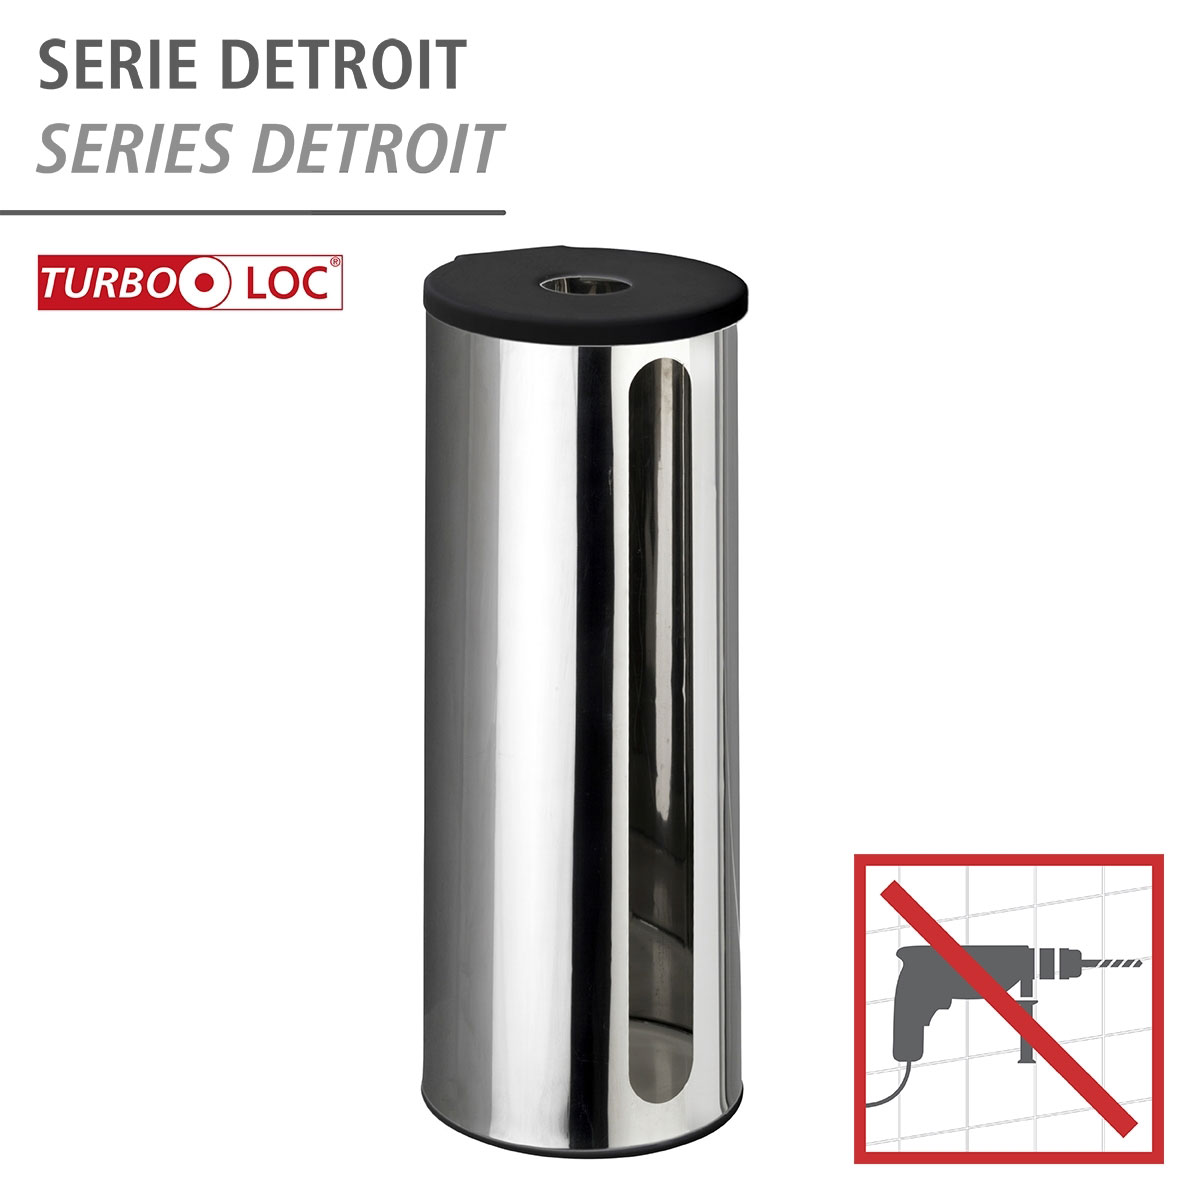 ohne Detroit Ersatzrollenhalter rostfrei bohren Wenko Edelstahl Turbo-Loc 514513 | Befestigen